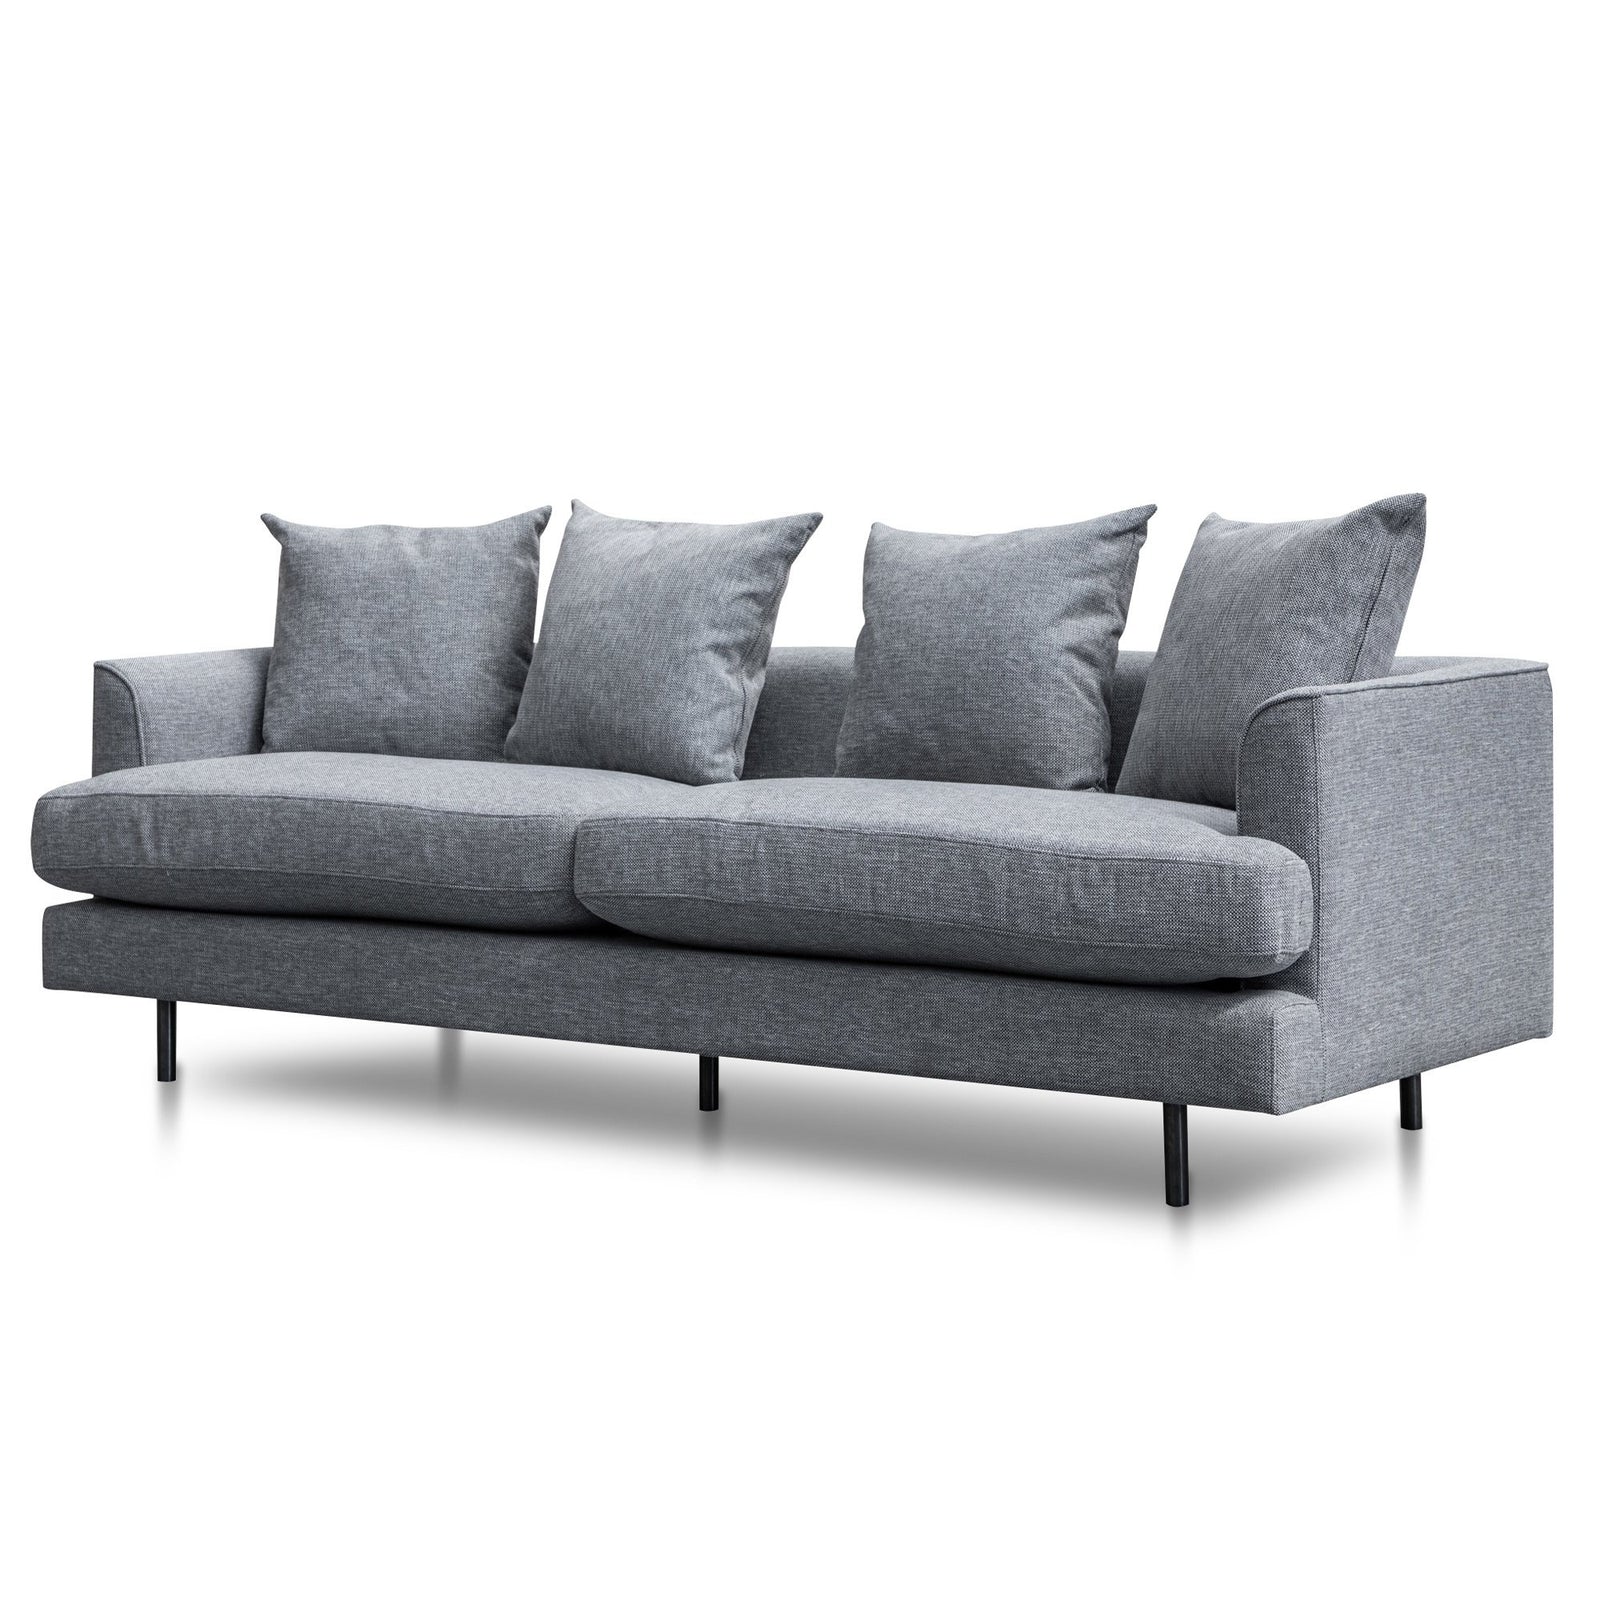 Calibre Furniture Andre 3 Seater Fabric Sofa - Graphite Grey